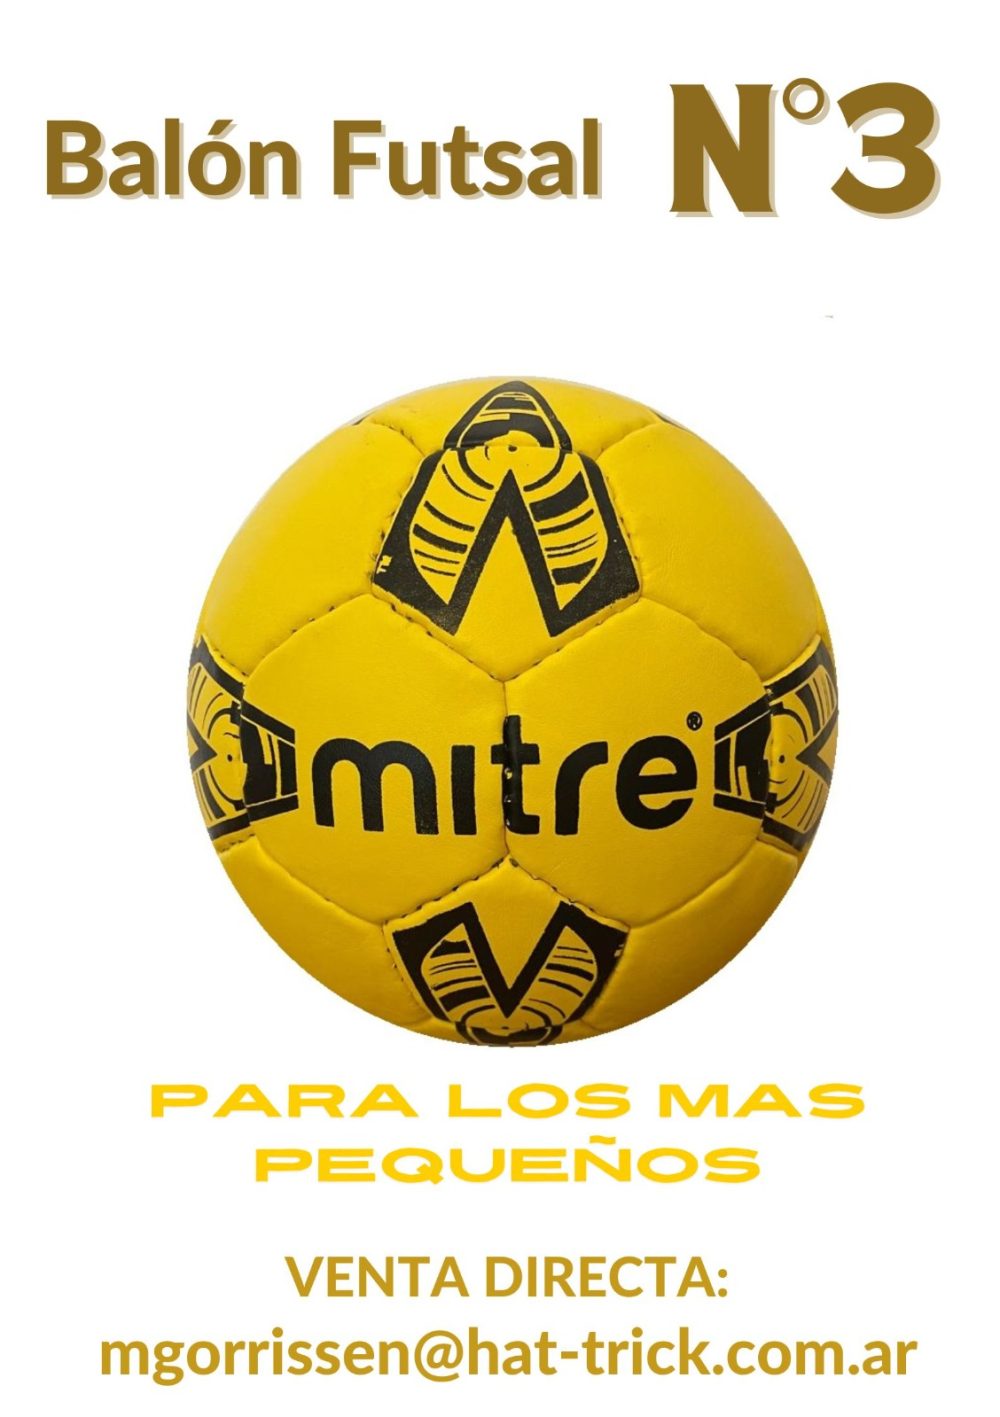     El mejor Balón del Futsal para los mas chicos llegó a Mendoza. El tamaño y peso ideal para las categorías formativas.